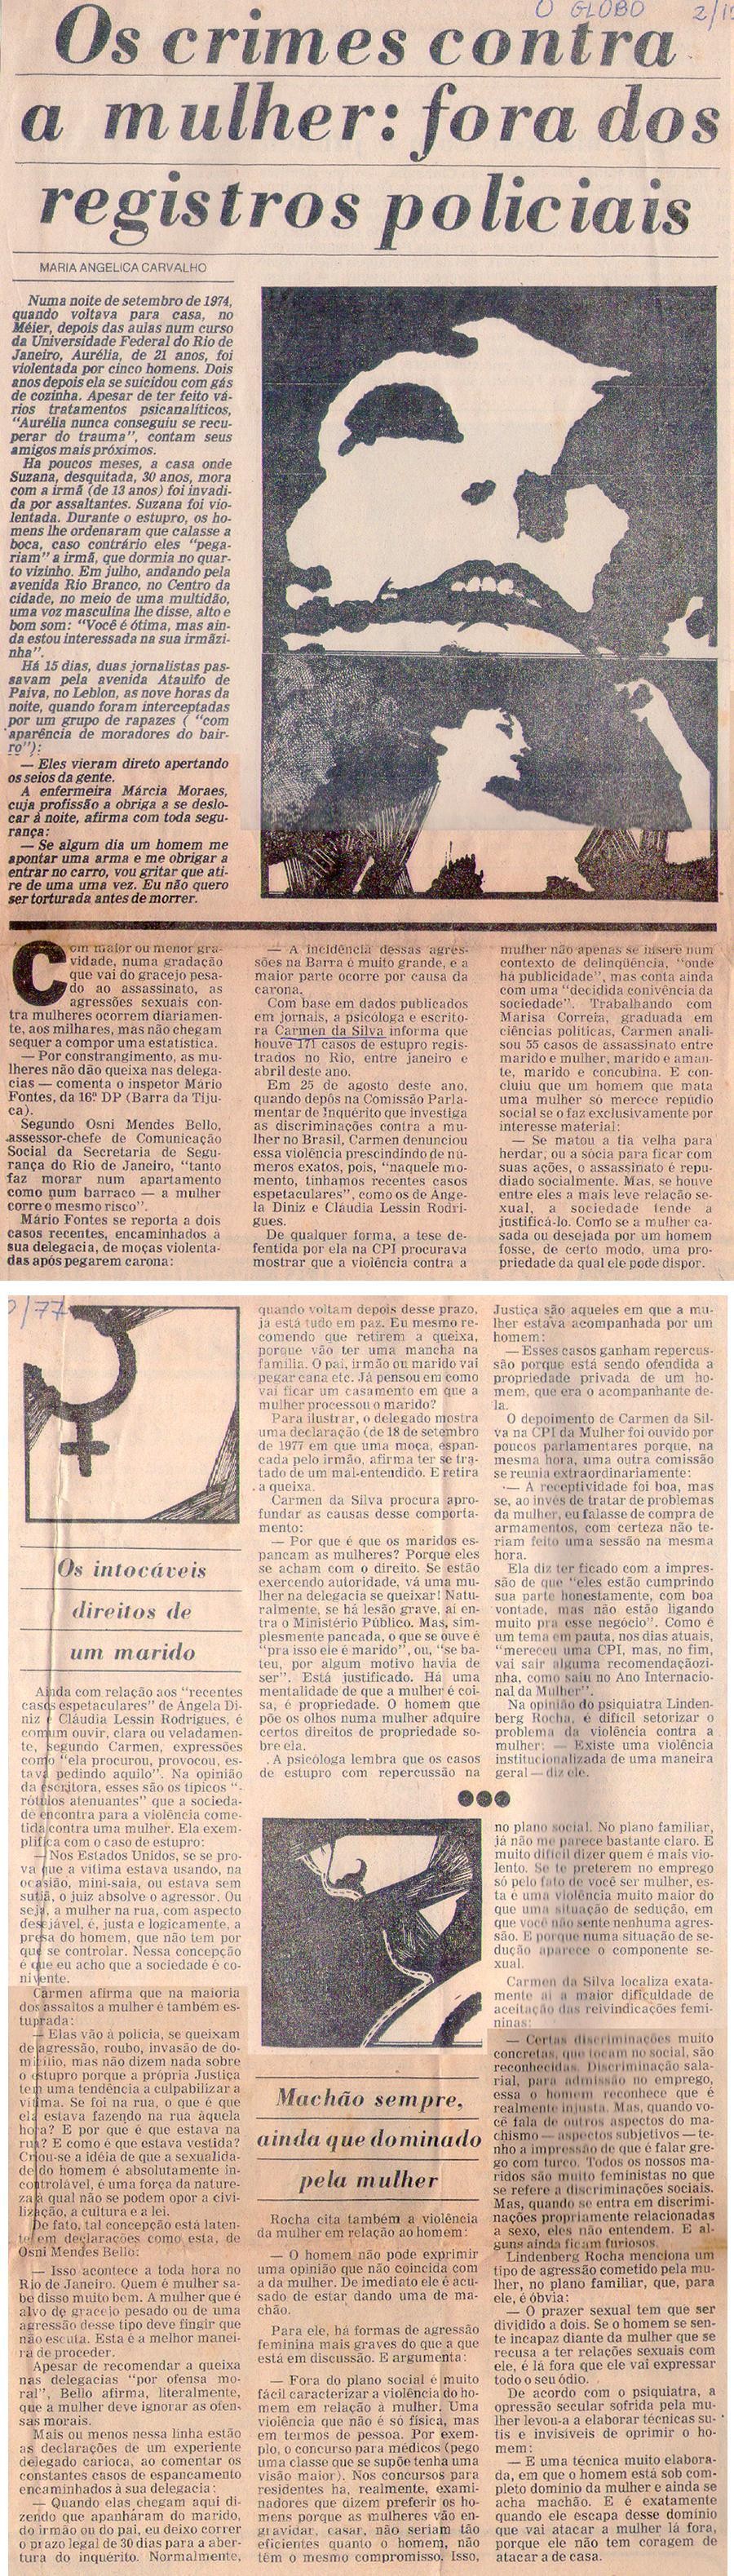 02 de Outubro de 1977 - O Globo. Os crimes contra a mulher: fora dos registros policiais.